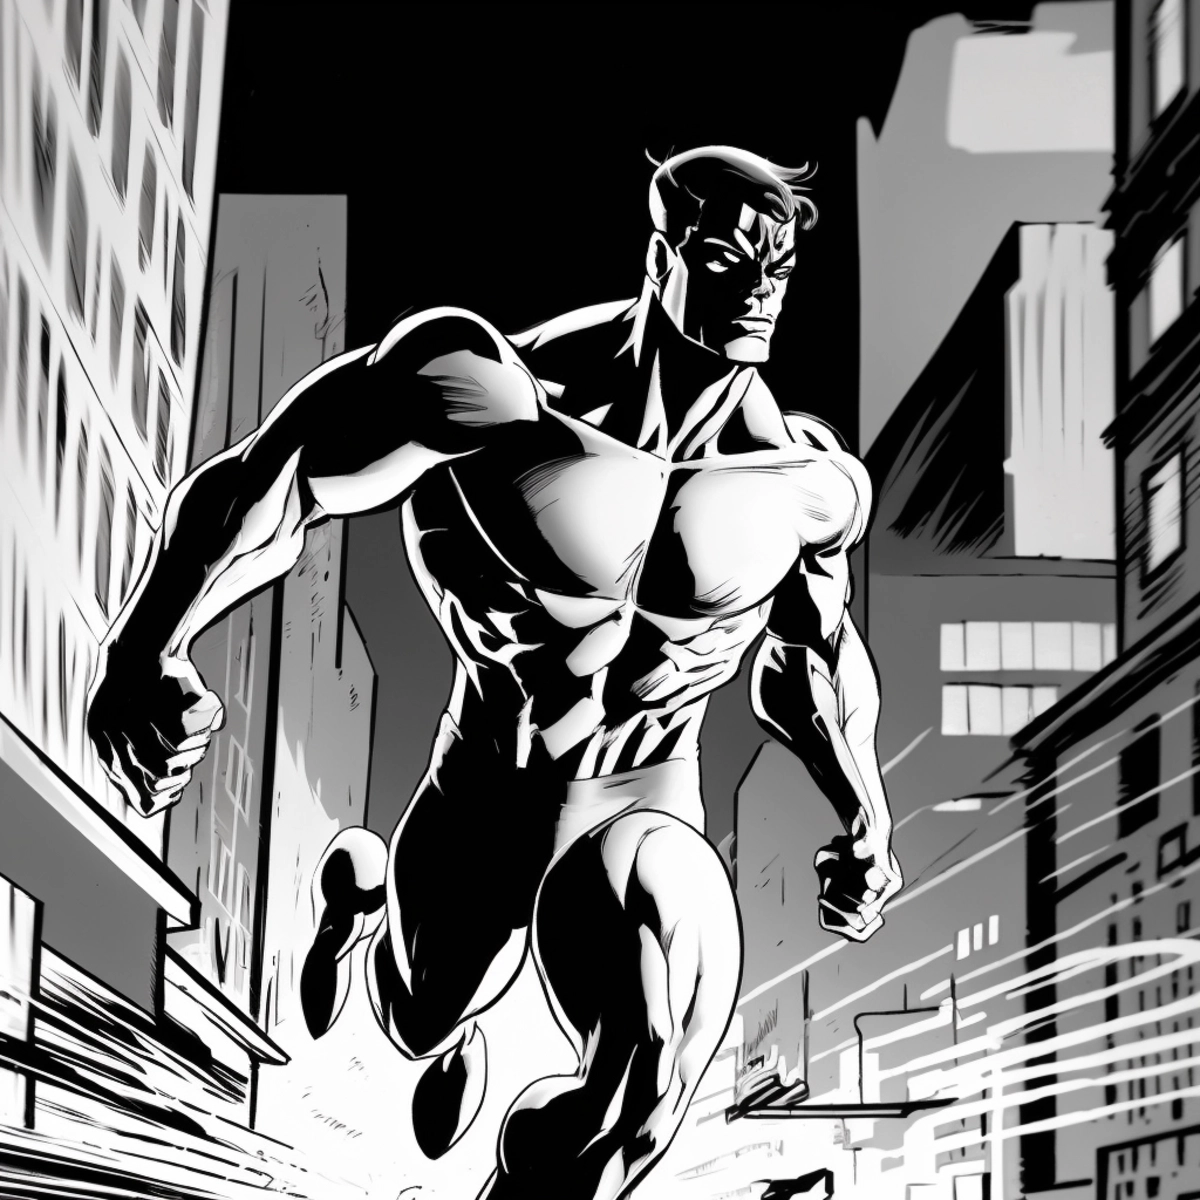 Uma ilustração dinâmica em estilo de história em quadrinhos de um super-herói entrando em ação, com uma paisagem urbana ao fundo